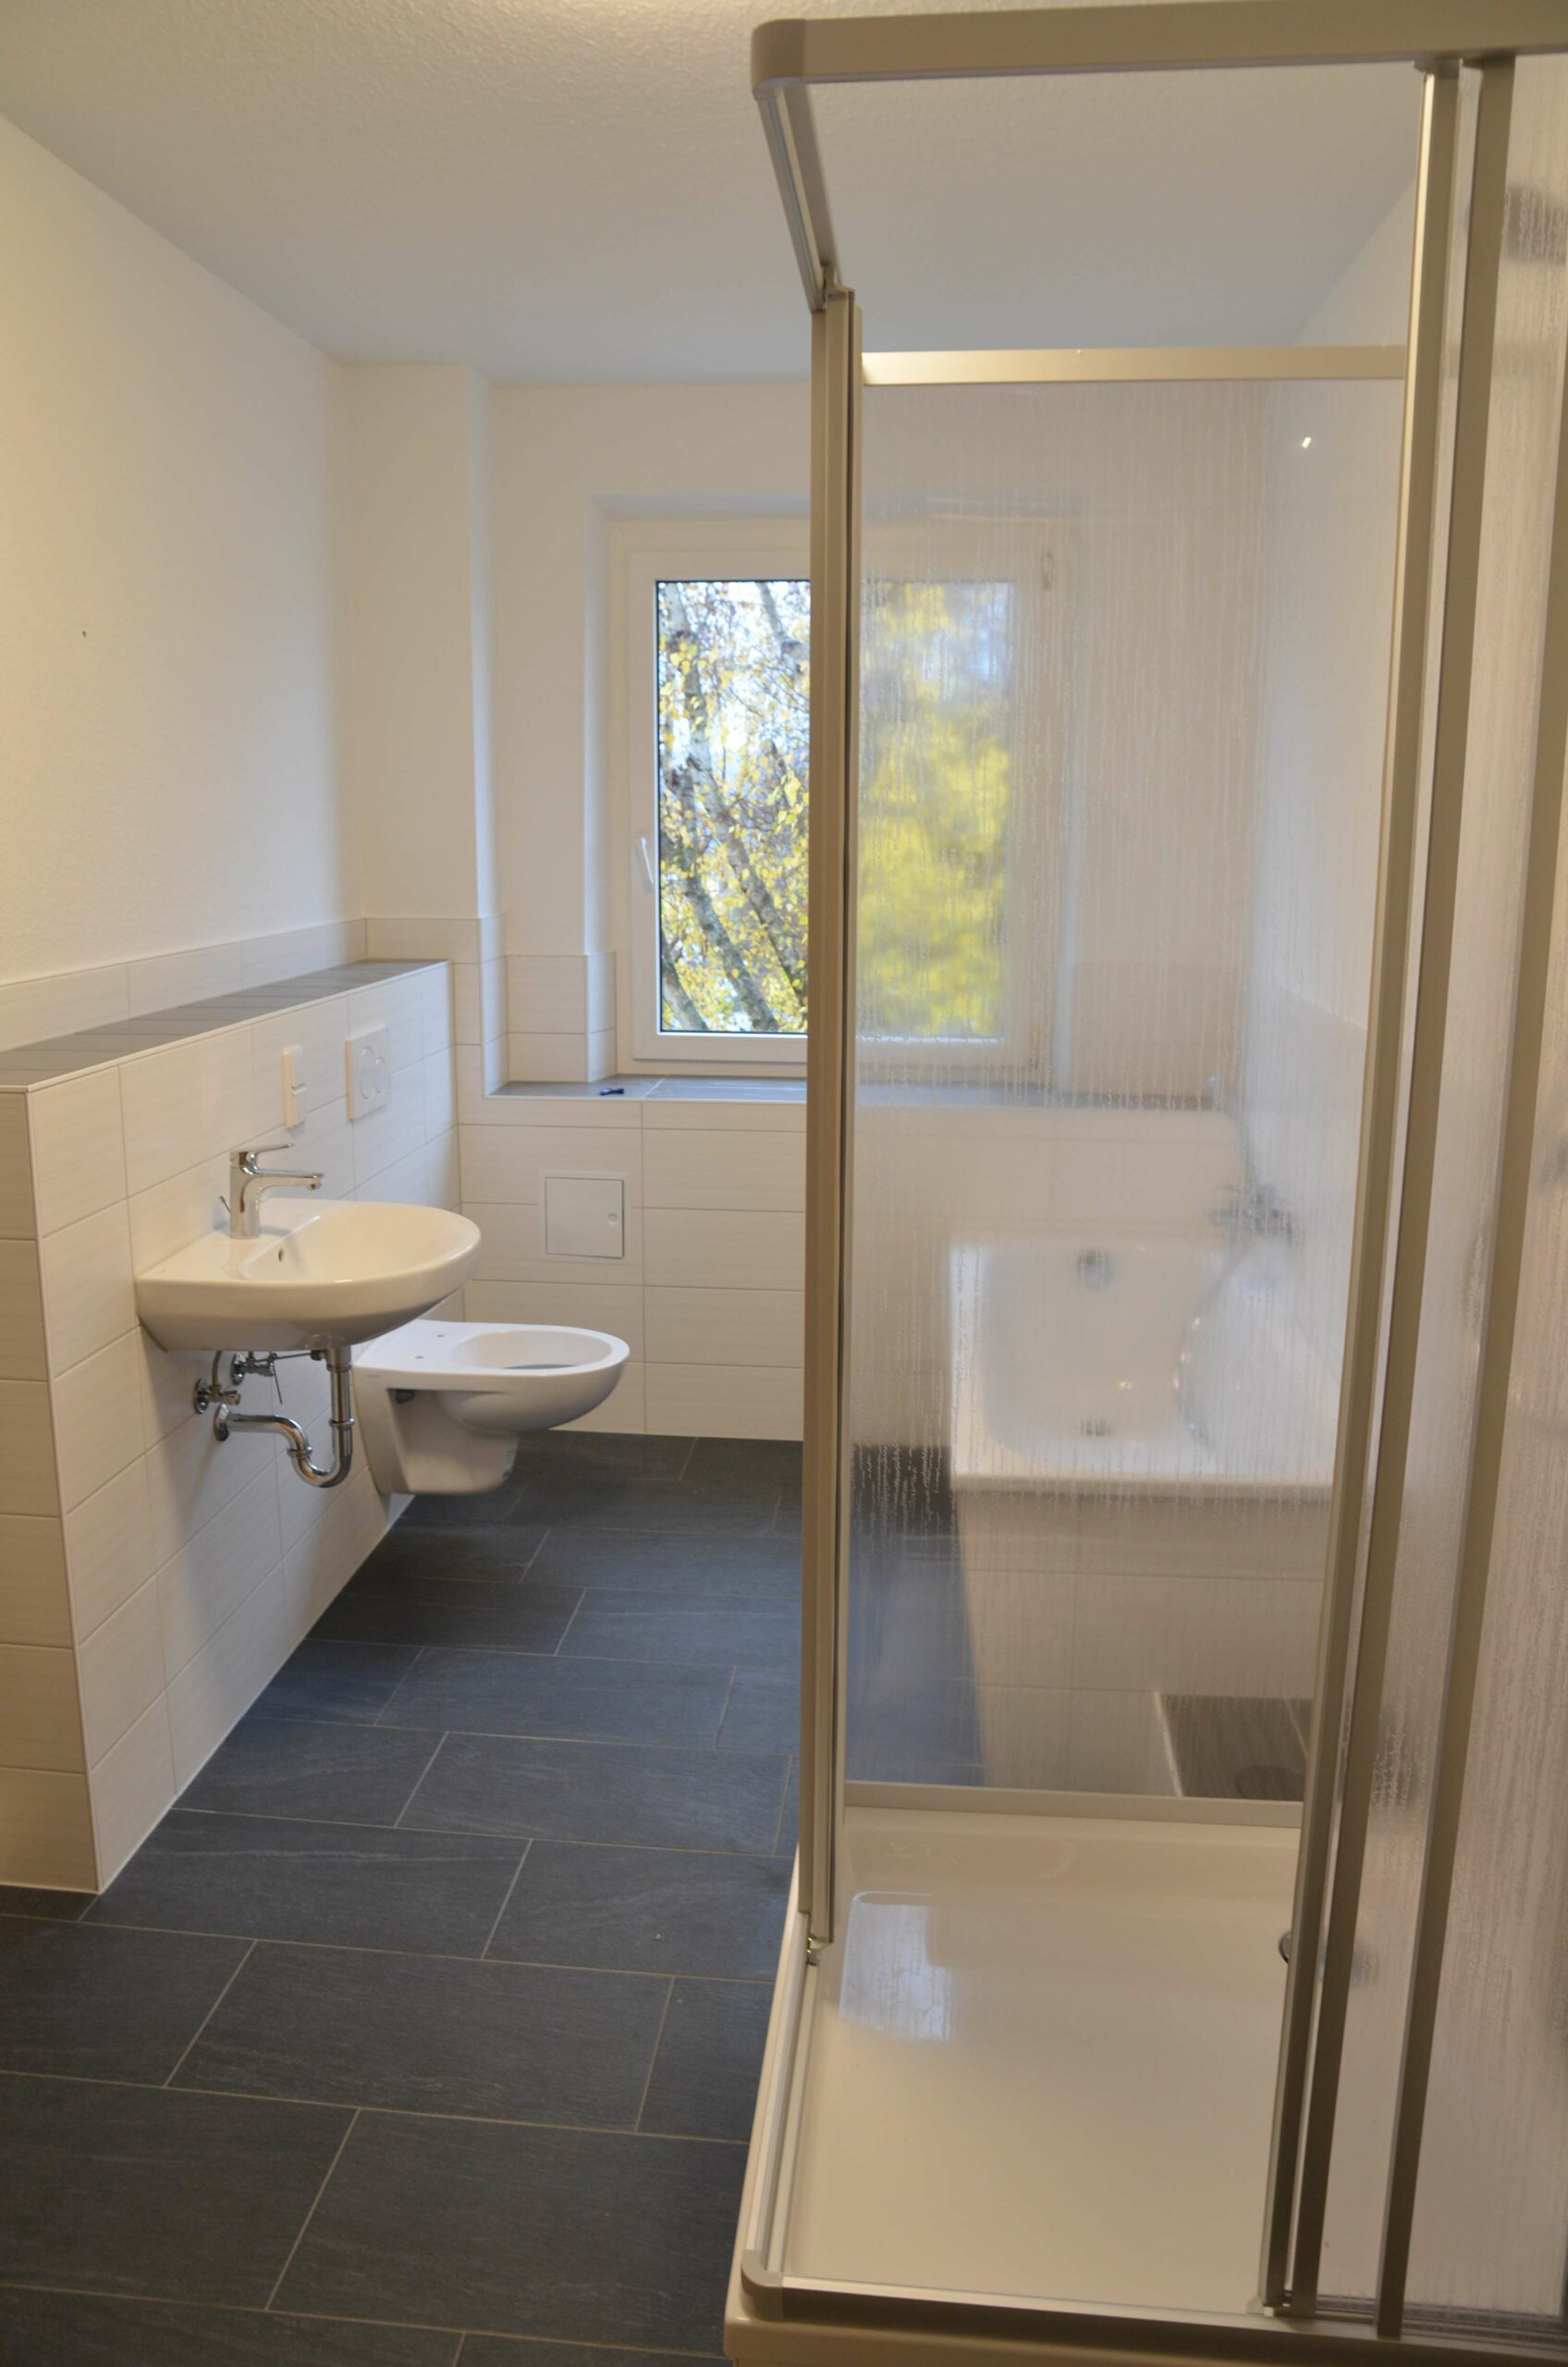 Wir sanieren für Sie! Individuell geschnittene 3-Raumwohnung mit offener Wohnküche - Badezimmer